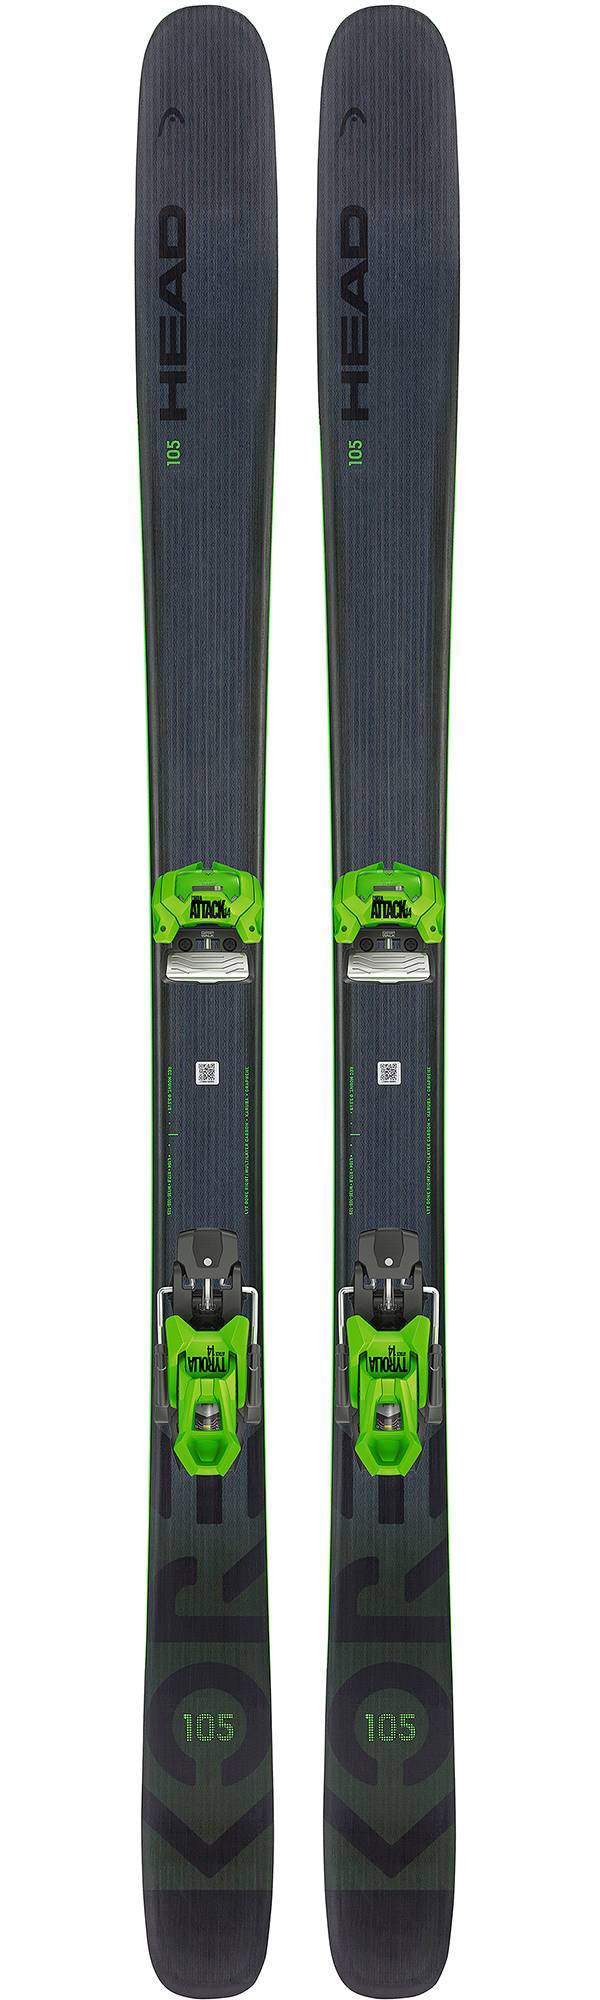 Head Kore 105 Skis product image